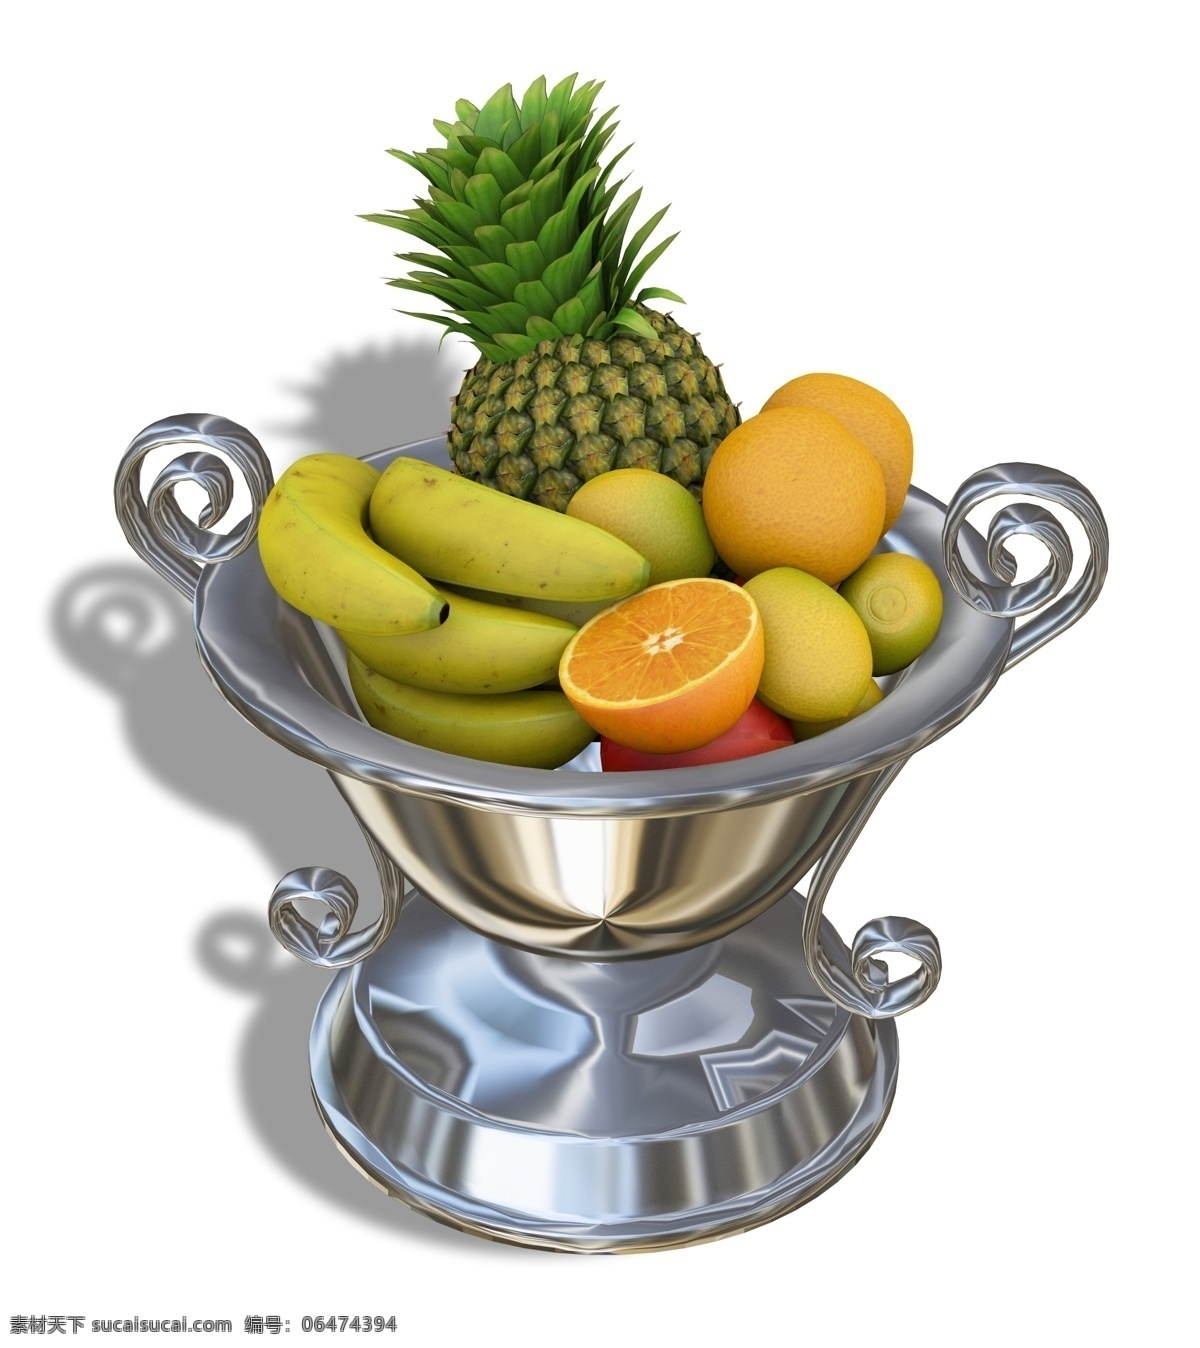 盘 新鲜 水果 组合 一盘 新鲜的 水果组合 菠萝 香蕉 橘子 橙子 苹果 金属盆 盛 满 盆子 高档水果盘